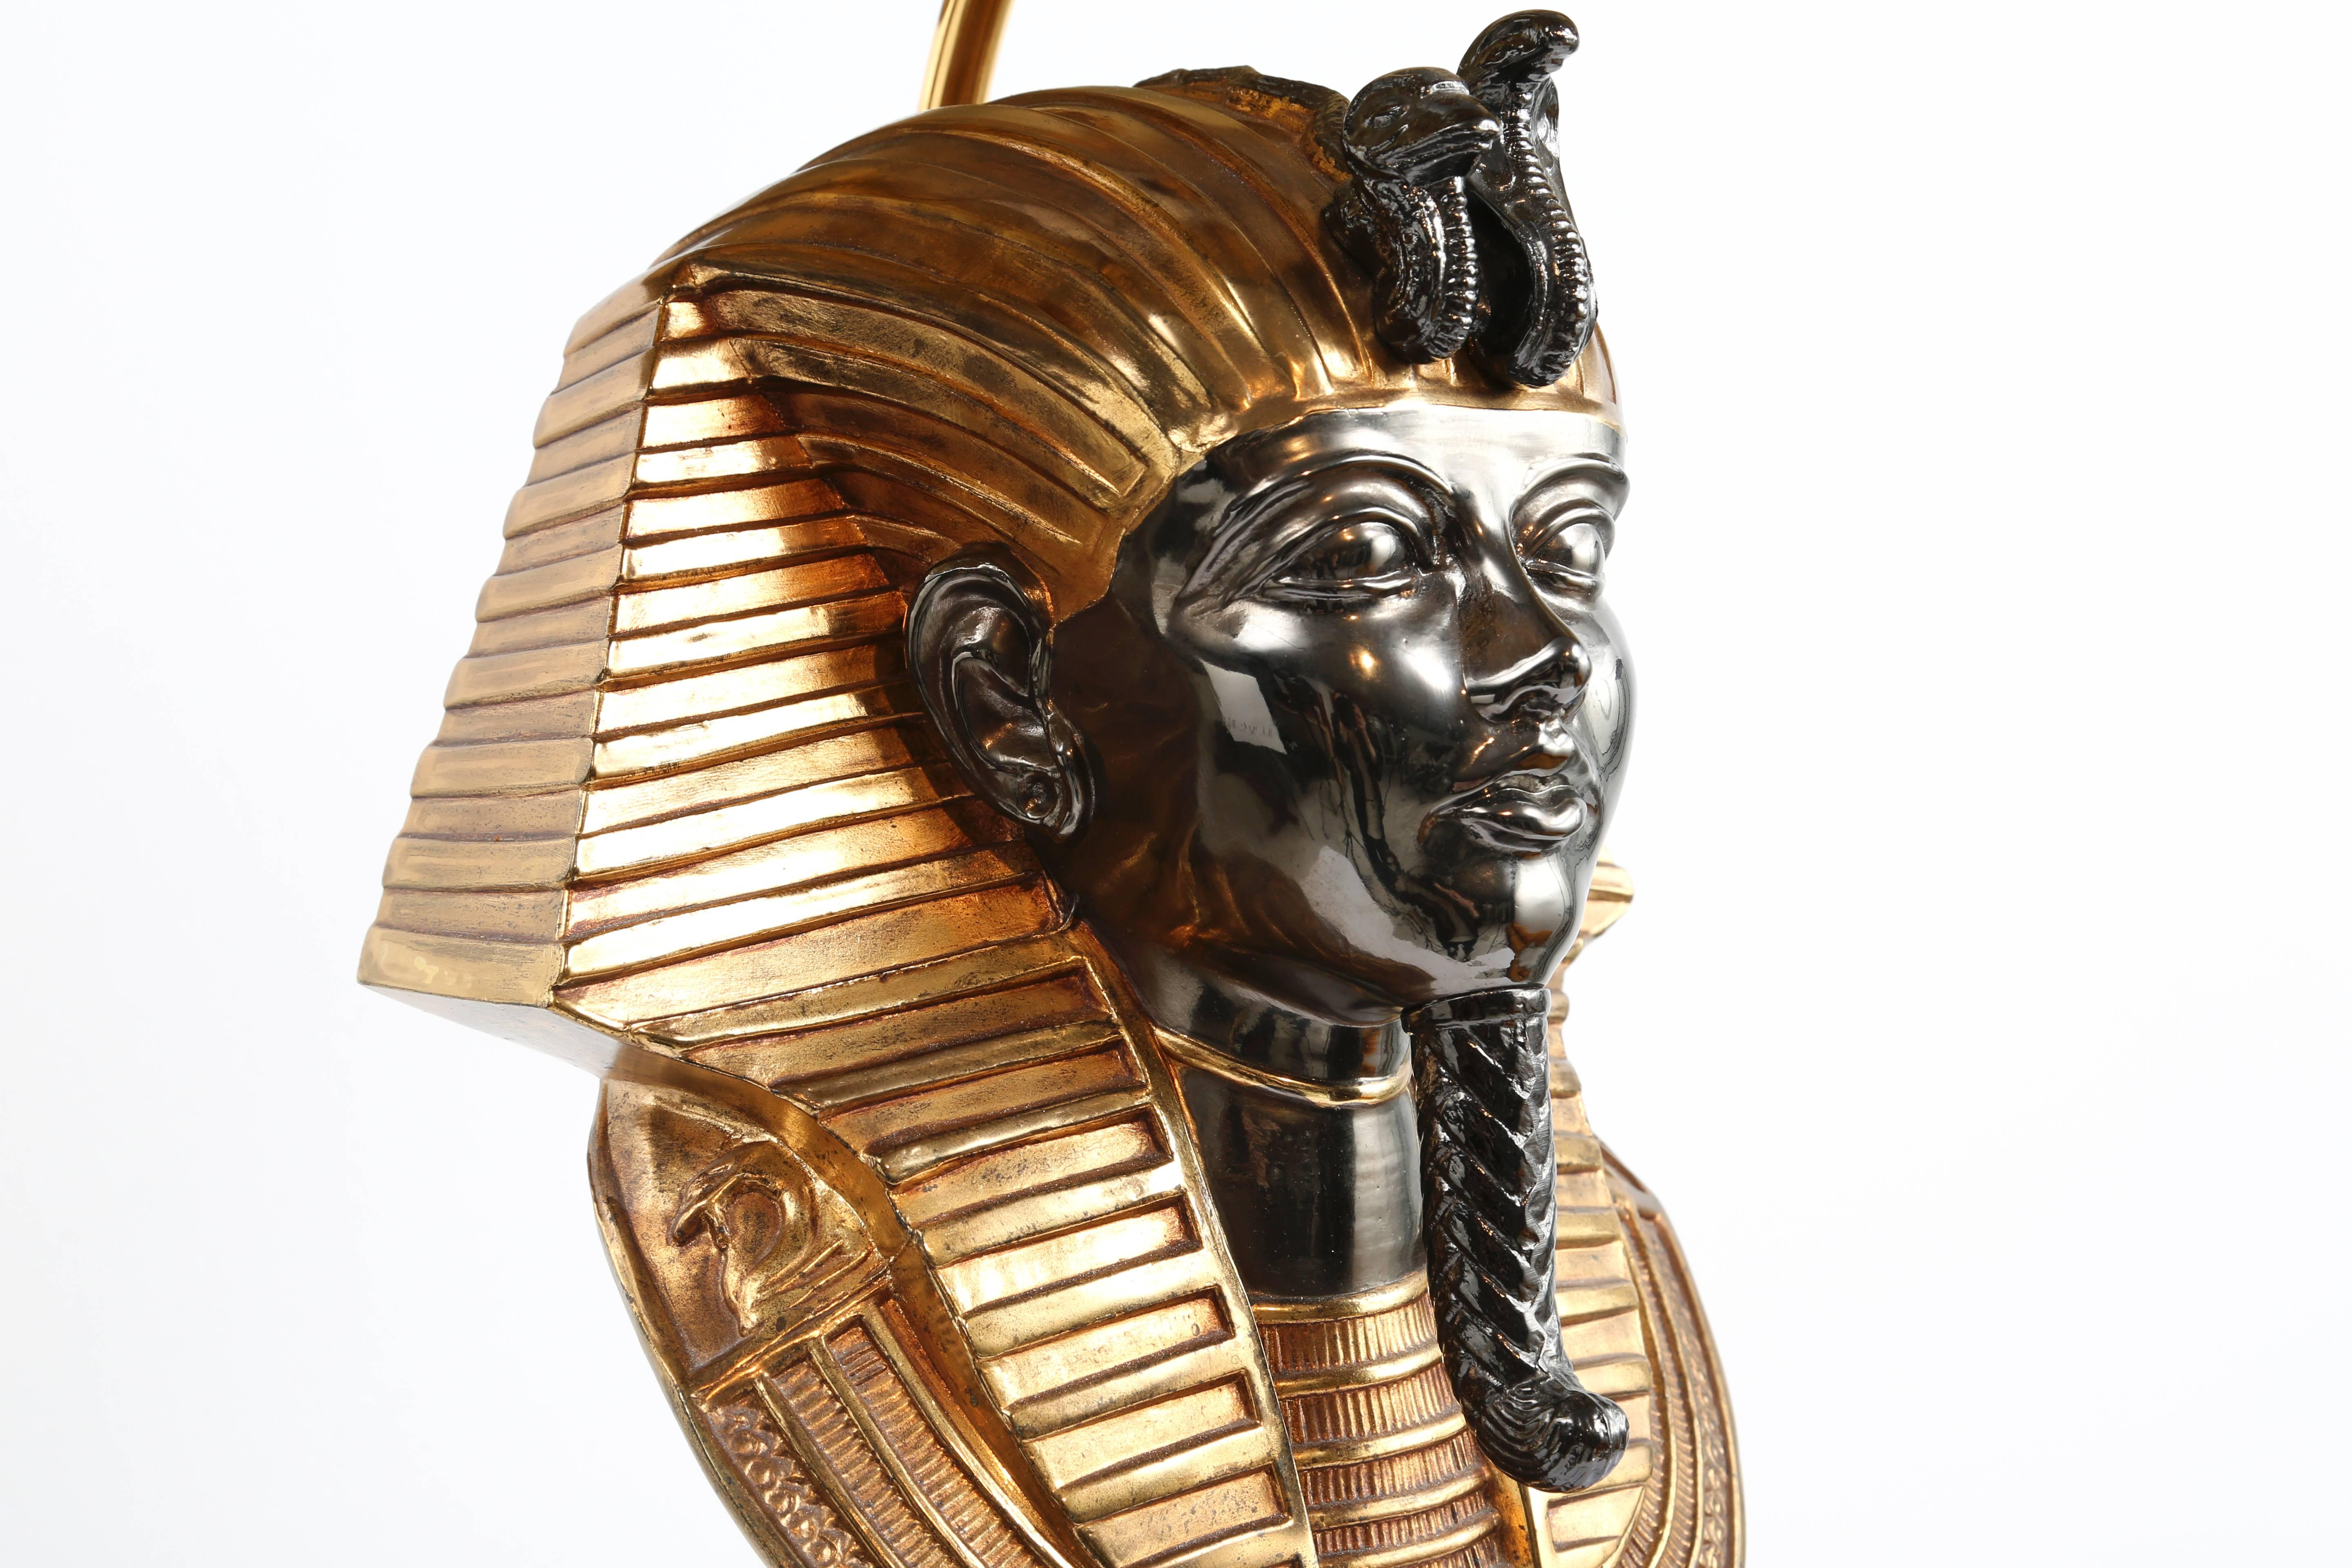 Belgian Pair of Egyptian Pharaoh Head Table Lamps by Maison Jansen for Deknudt